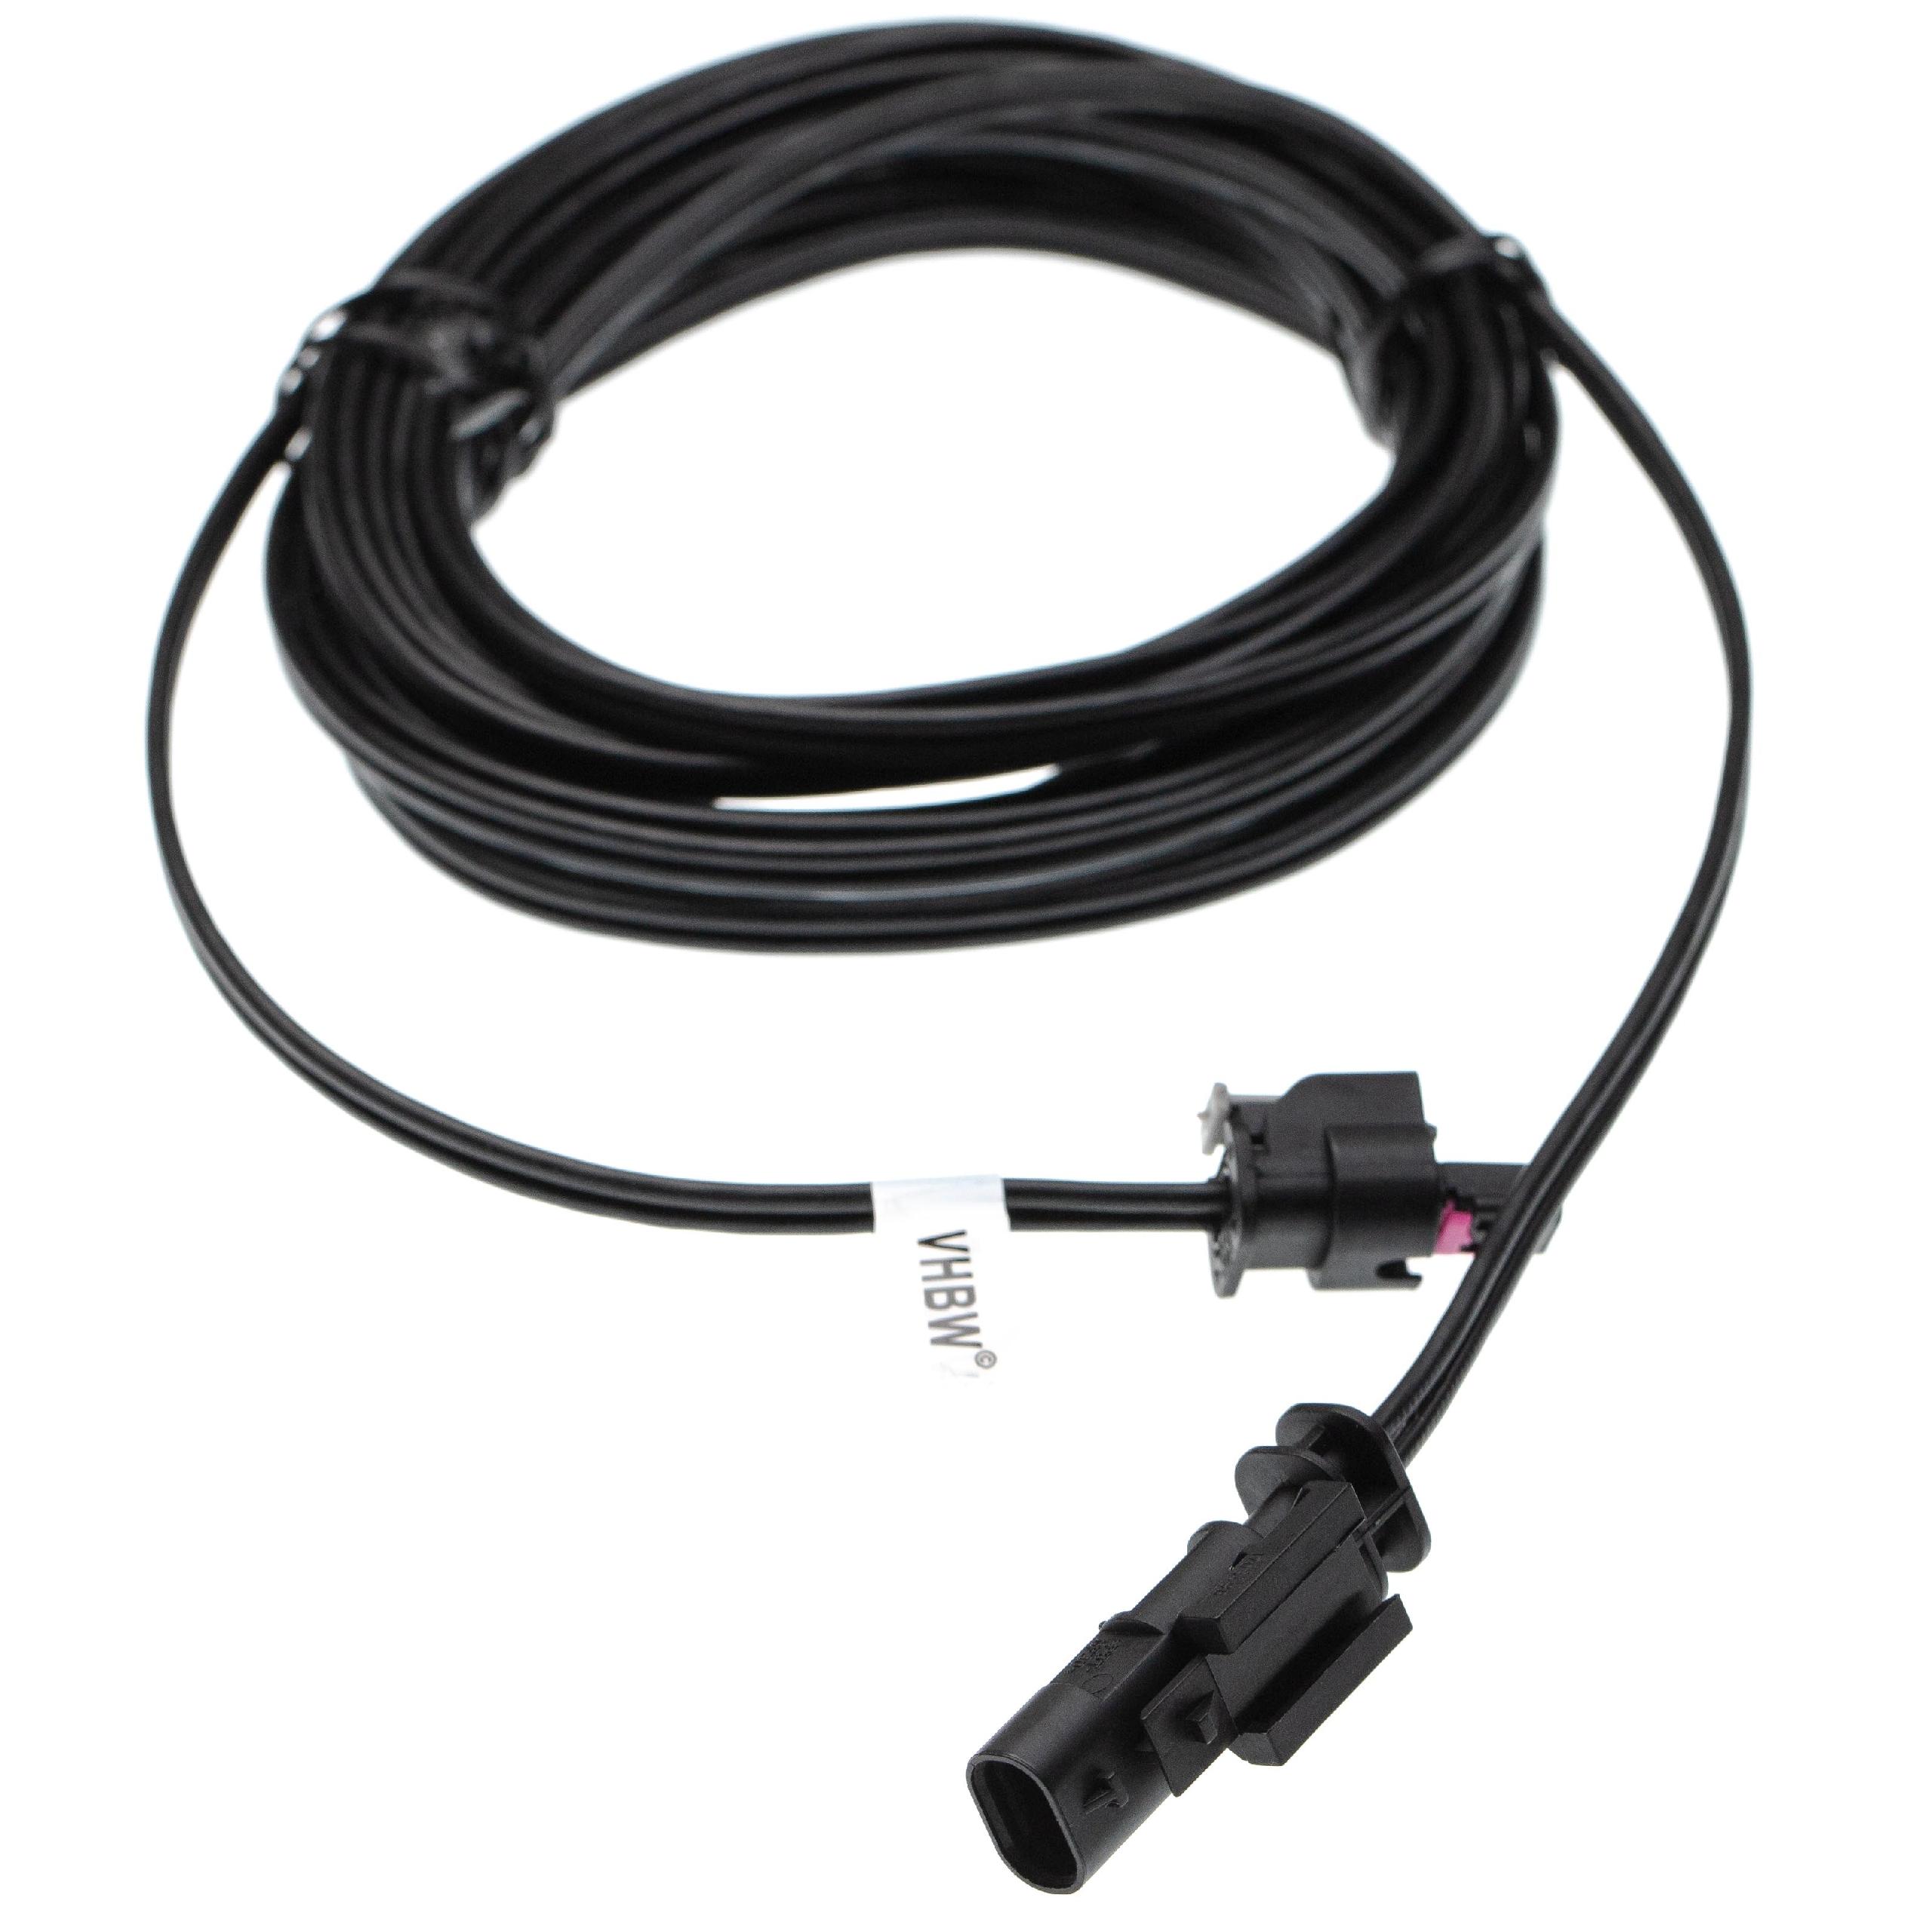 Cable de bajo voltaje reemplaza Husqvarna 581 16 66-01, 581 16 66-03, 581 16 66-02 - cable trafo, 5 m